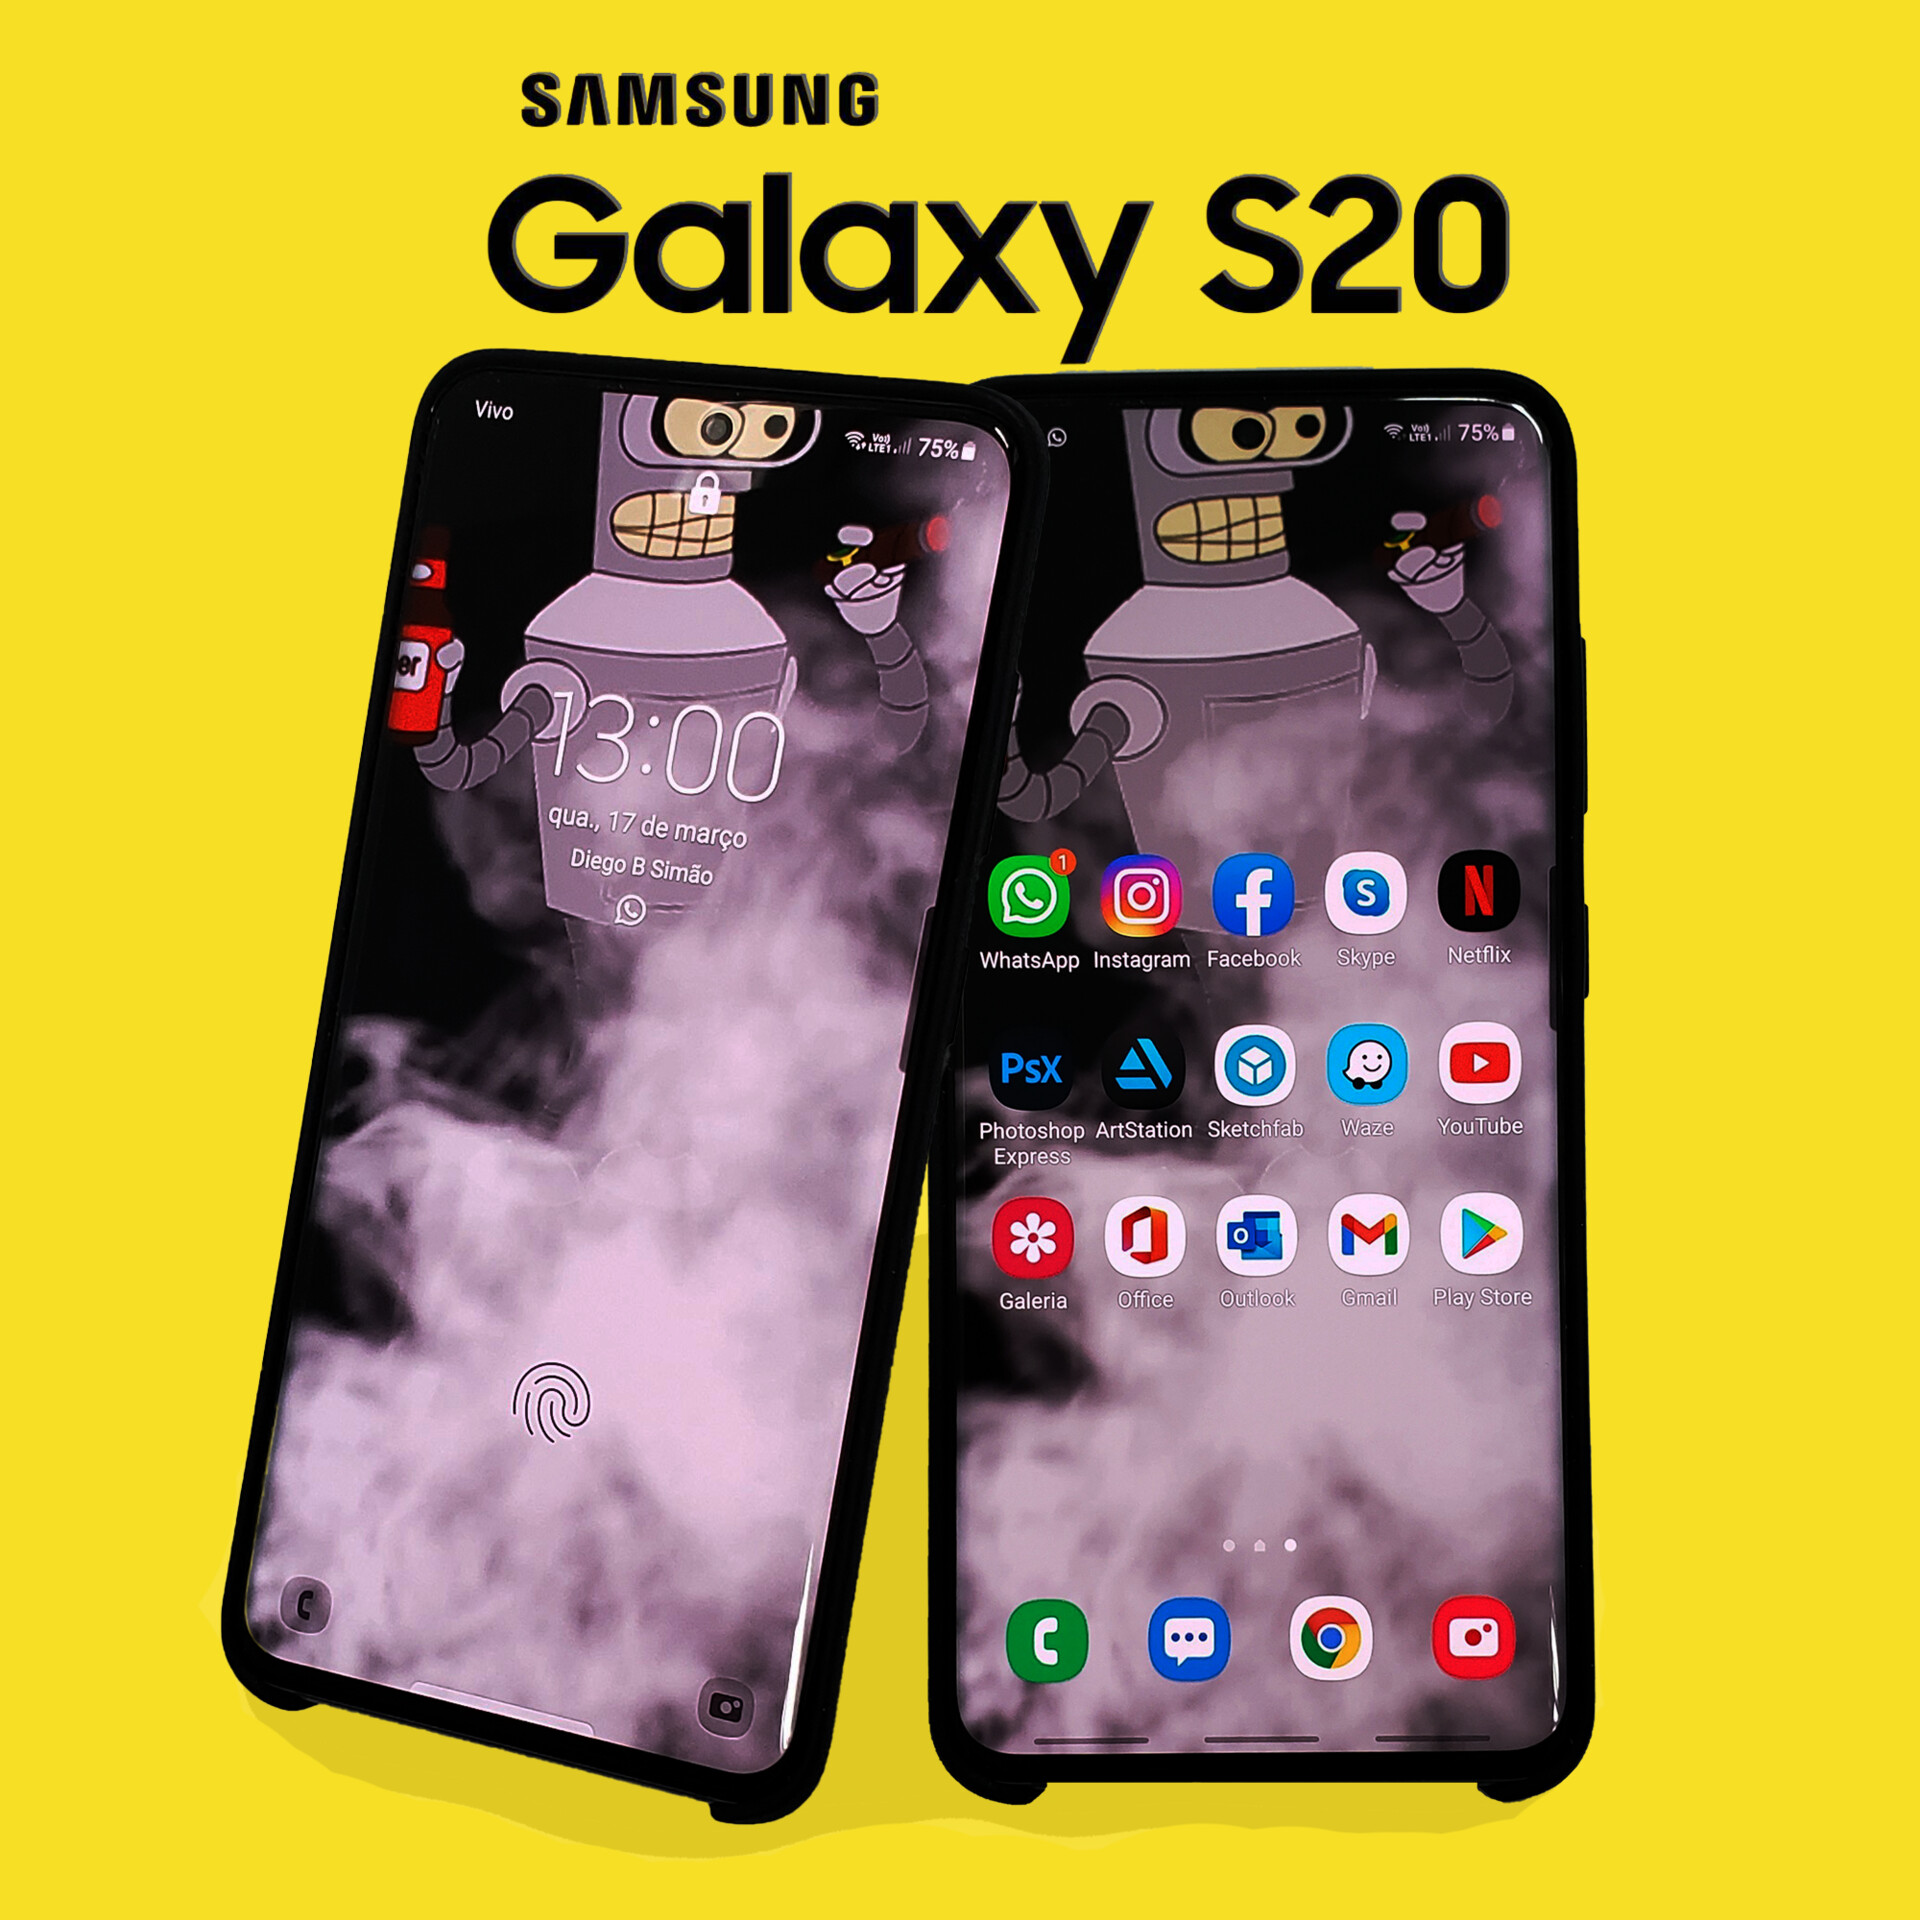 Bộ sưu tập hình nền Samsung Galaxy S20 camera sẽ khiến bạn hài lòng với cả chất lượng ảnh và sự đa dạng. Trải nghiệm điện thoại của bạn với những hình nền độc đáo chụp từ camera của Samsung Galaxy S20, và thể hiện cá tính của bạn thông qua màn hình điện thoại. Hãy khám phá ngay để tìm kiếm hình nền yêu thích của bạn!